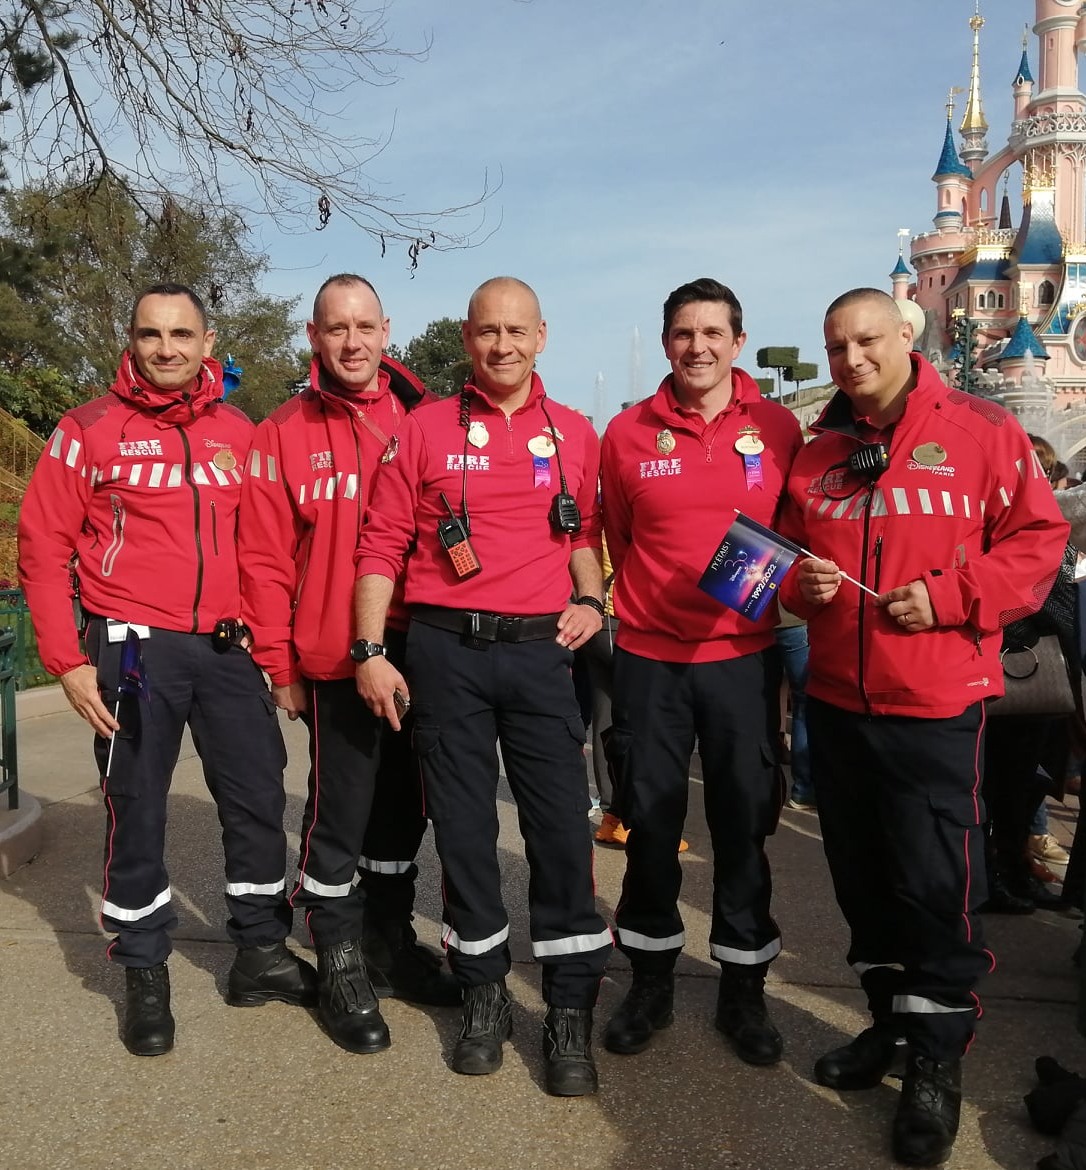 Cast members opérations de secours (Fire Rescue) - Pompiers Disneyland Paris